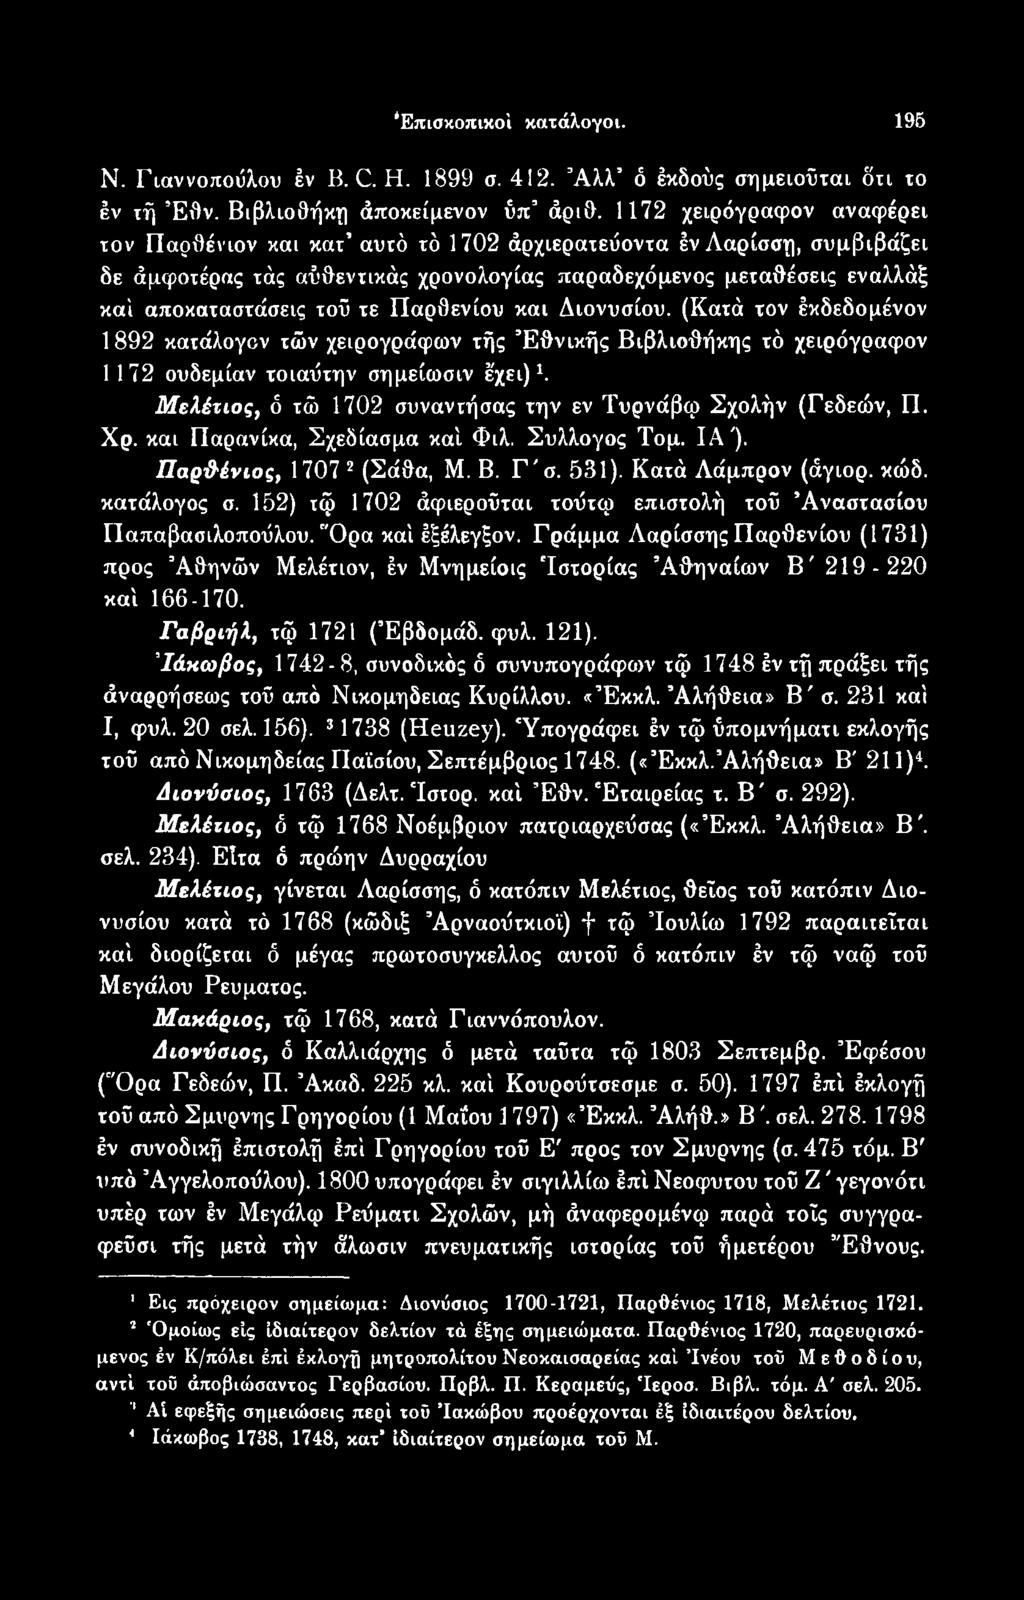 κατάλογος σ. 152) τφ 1702 άφιεροϋται τοΰτφ επιστολή τοΰ Αναστασίου ΓΙαπαβασιλοποόλου. "Ορα καί έξέλεγξον.